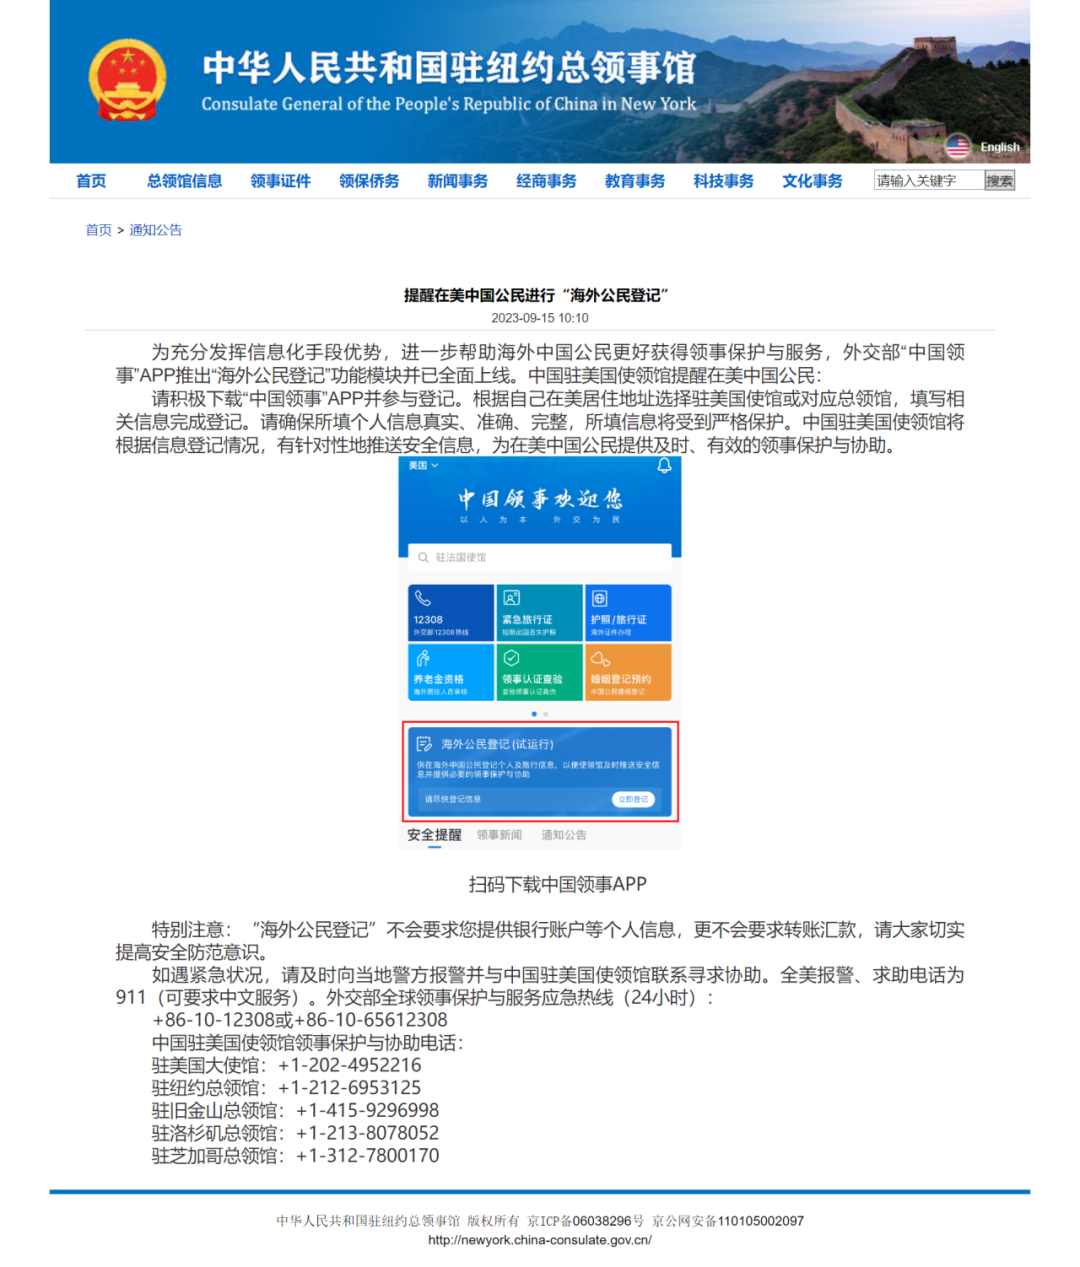 XBB.1.5已成美国优势毒株，驻美使馆提醒中国公民加强防范 | 极目新闻